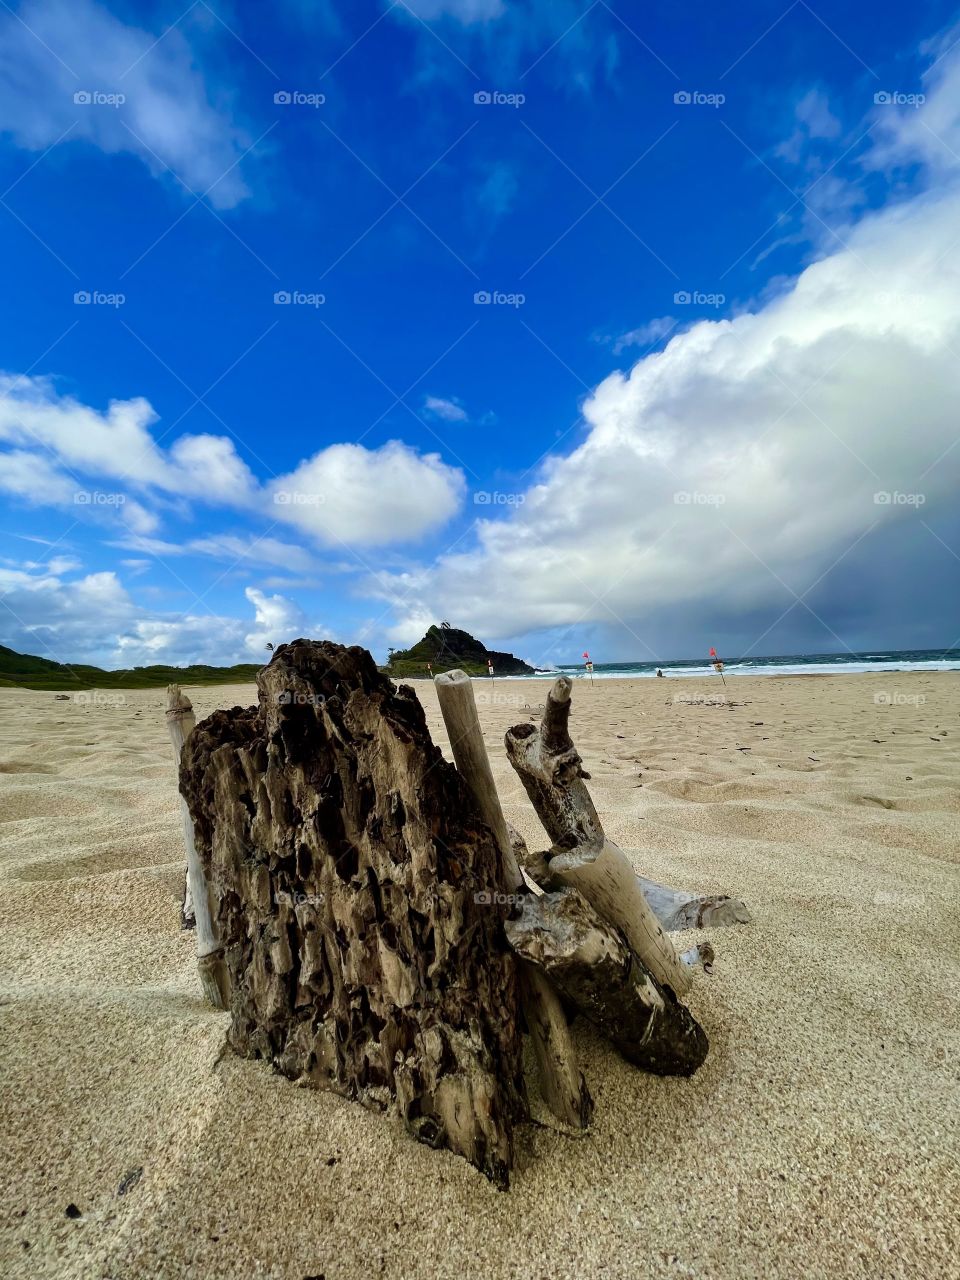 Beach bark